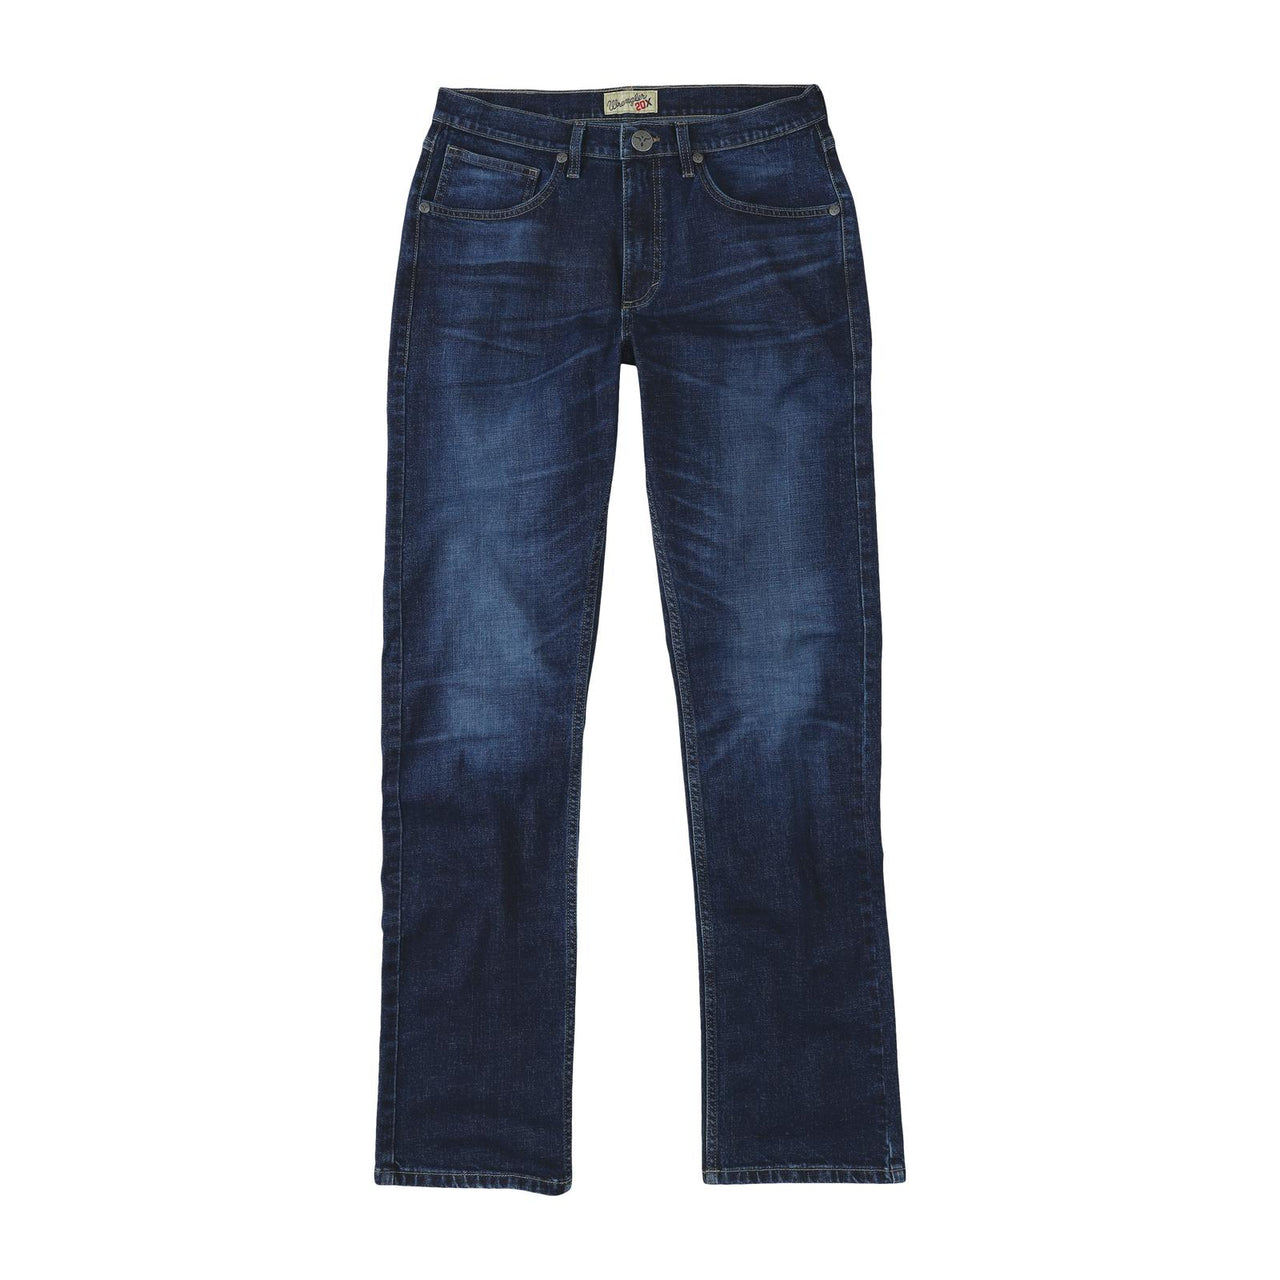 Wrangler Men's 20X 44 Slim Straight Jeans - Blueberry Gardens